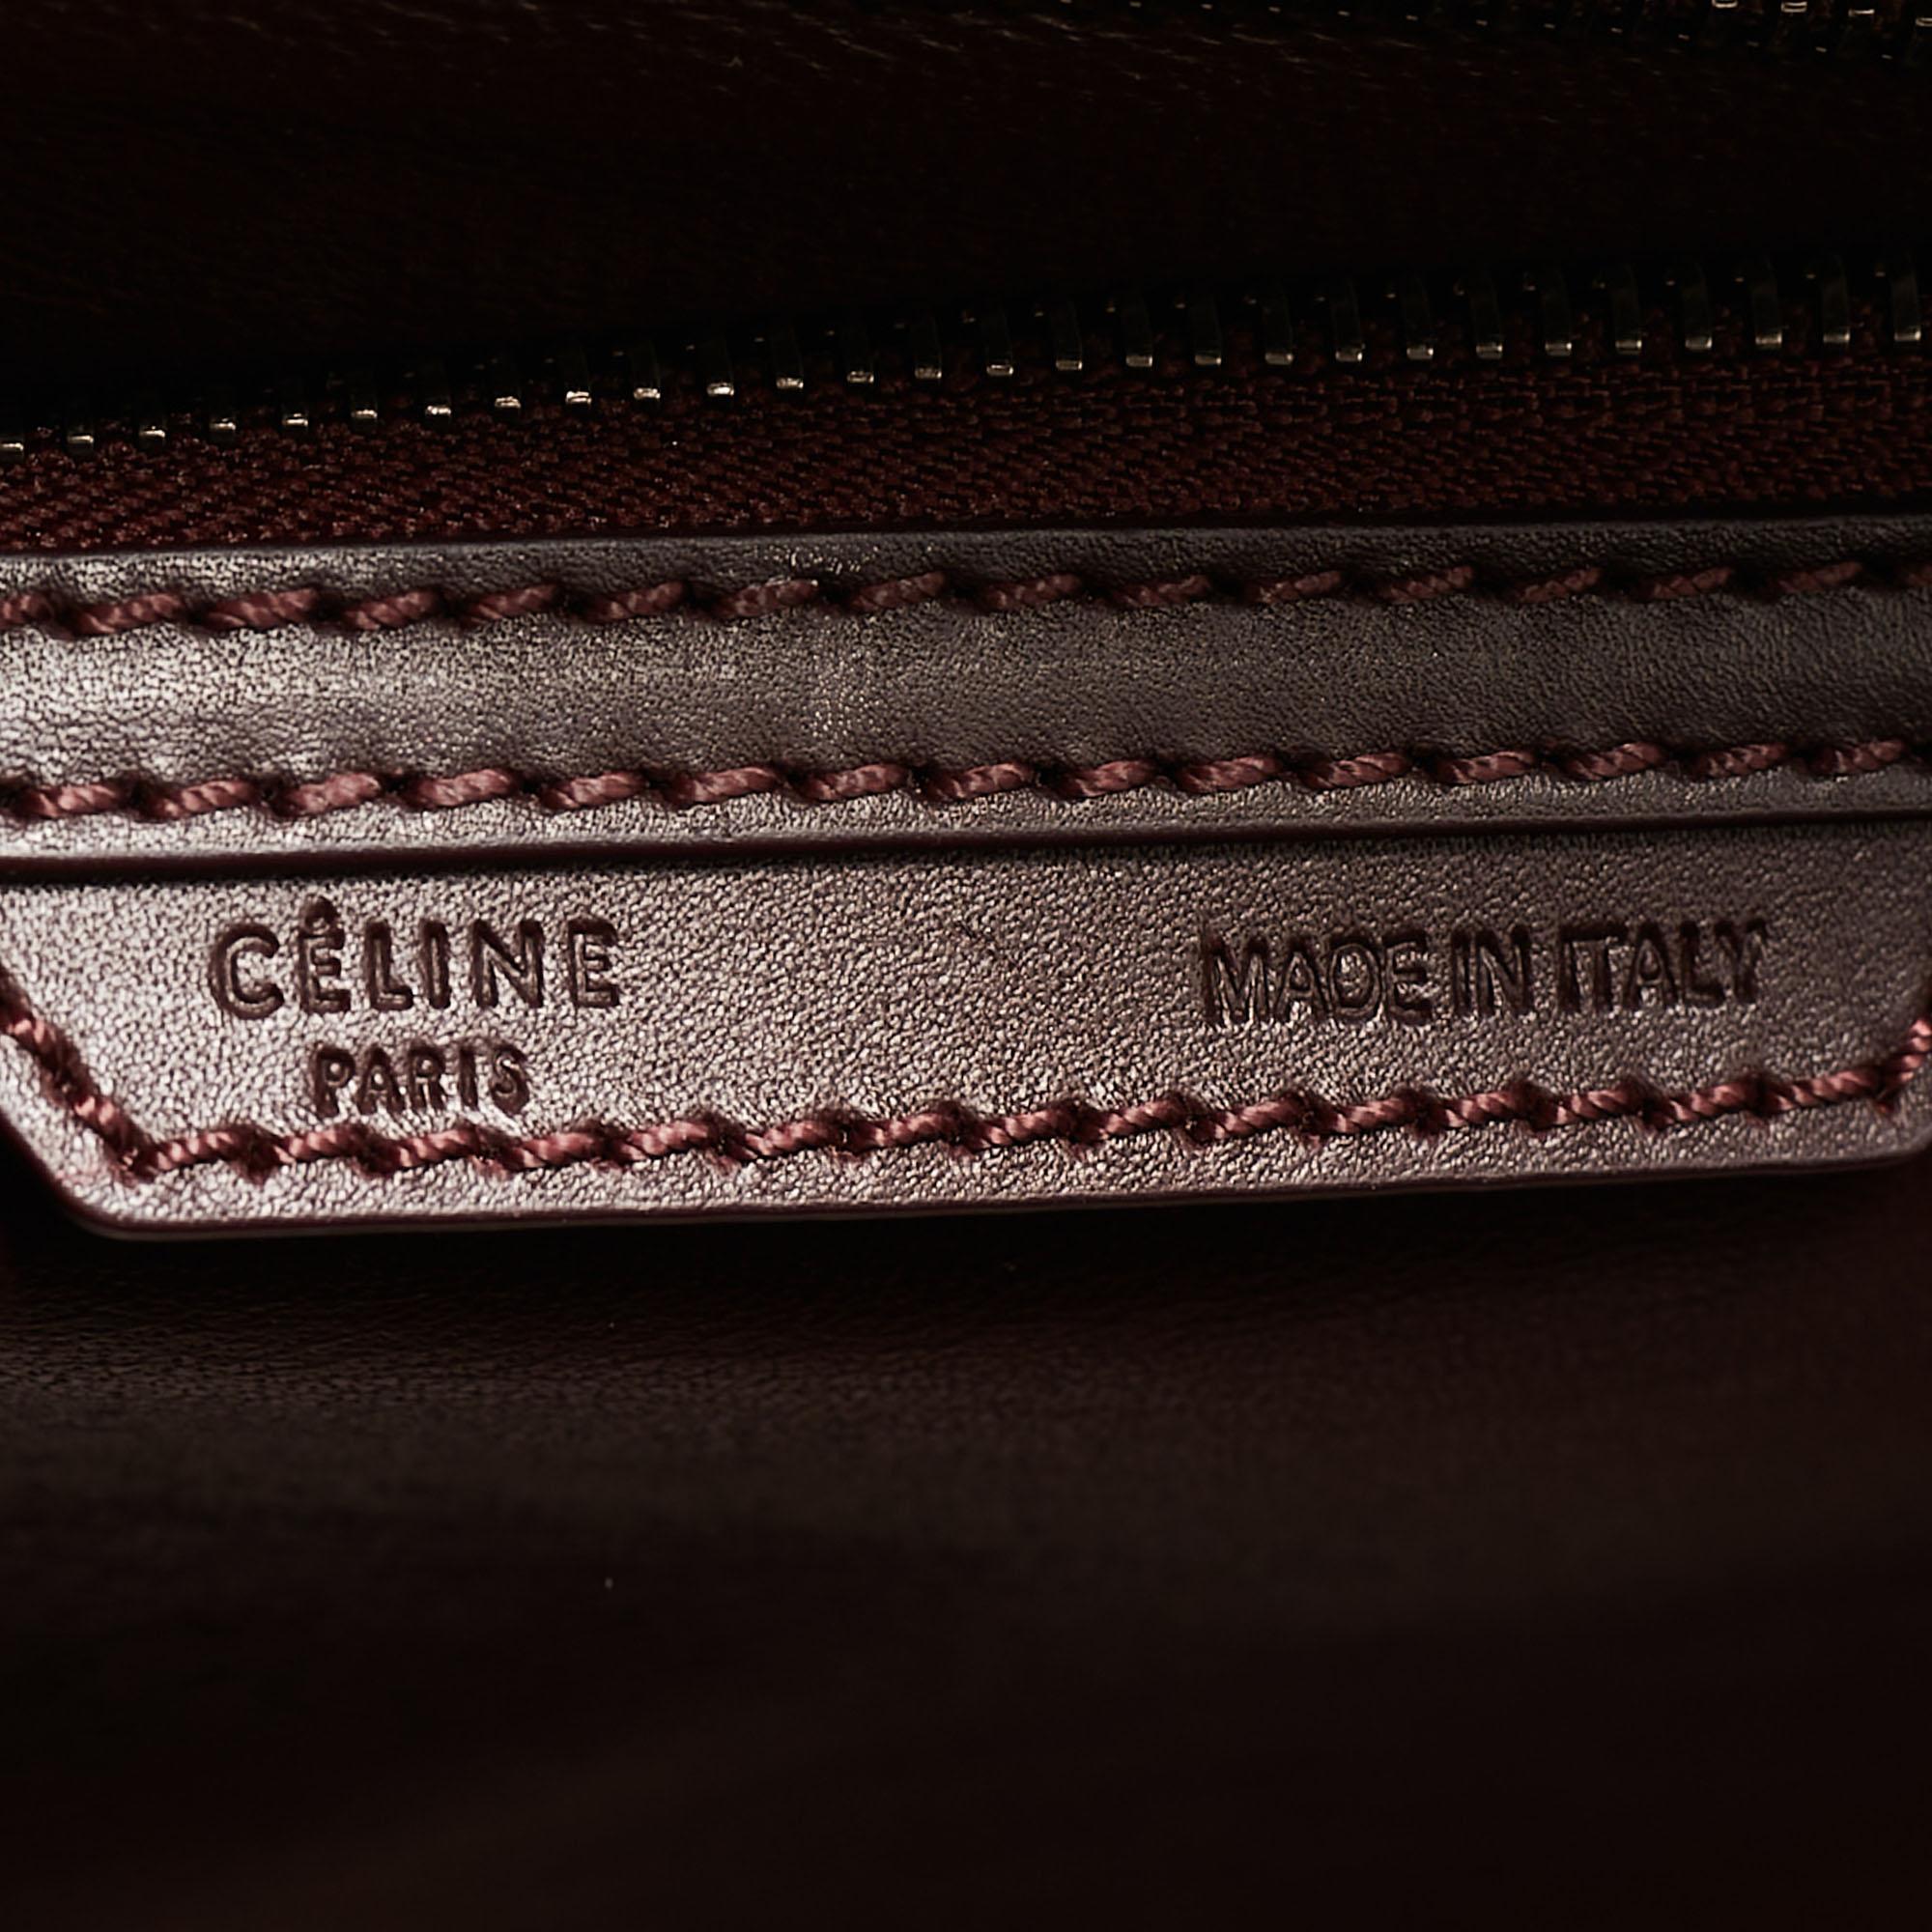 Celine Dark Burgundy Leather Mini Luggage Tote 5